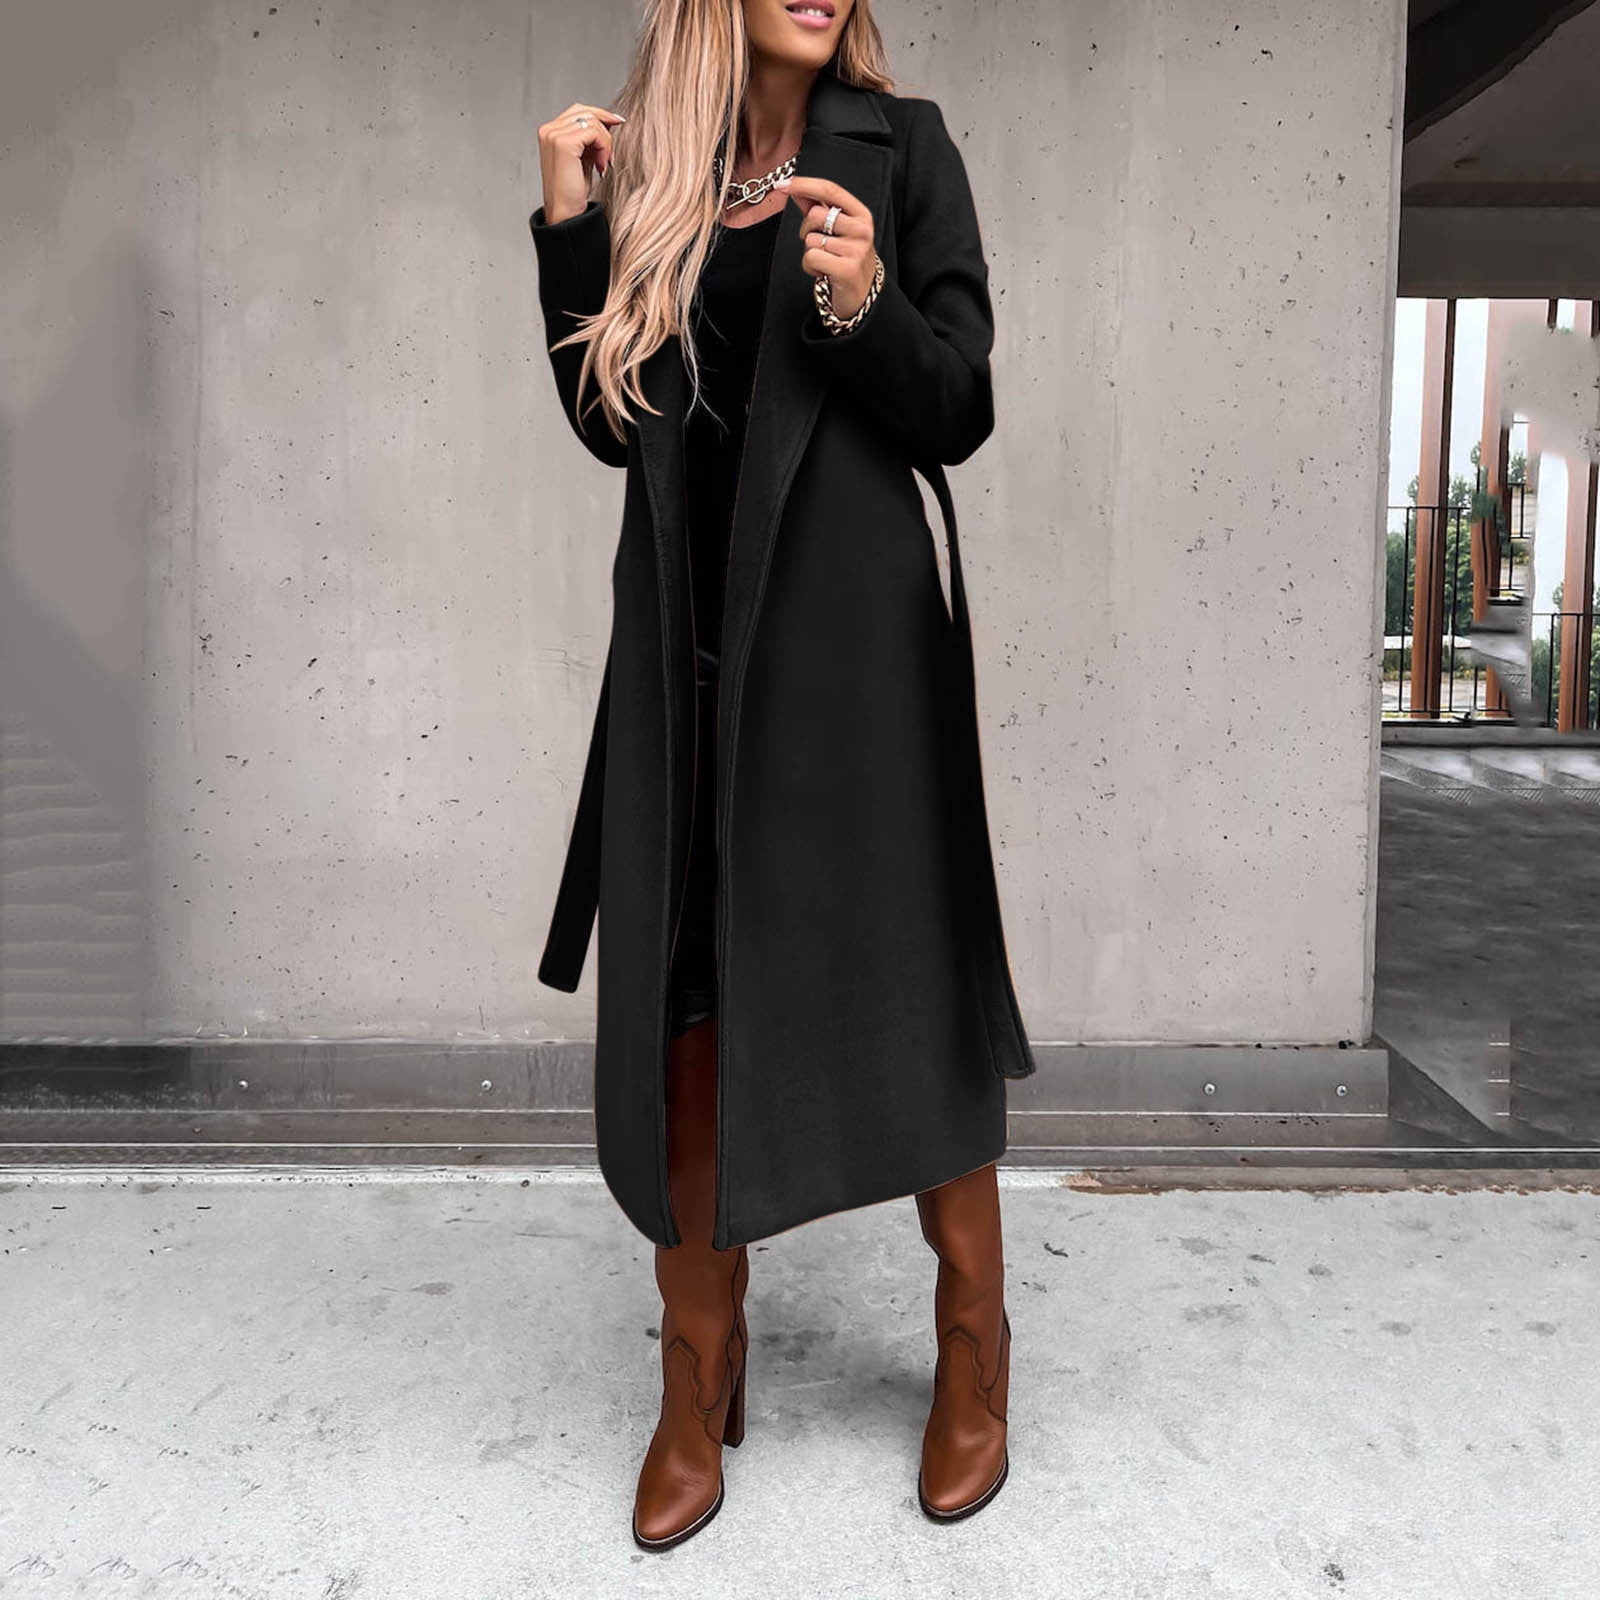 MRULIC winter coats for women Women's Wool Coat Blouse Thin Coat Trench  Long Jacket Ladies Slim Long Belt Elegant Overcoat Outwear Black + S 